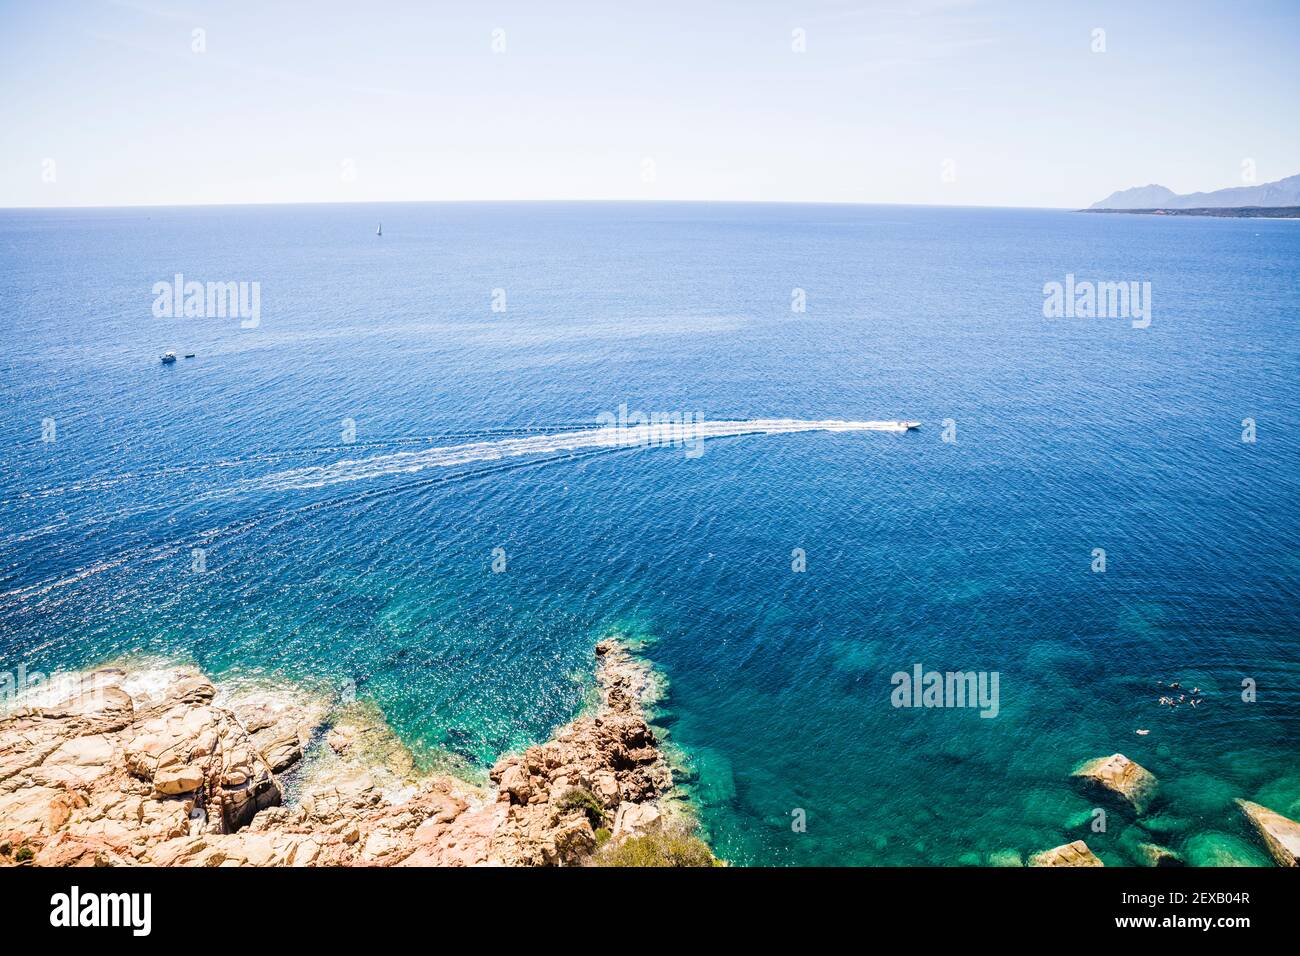 Sardinien Küste mit kleinen Booten auf dem ruhigen Wasser Stockfoto